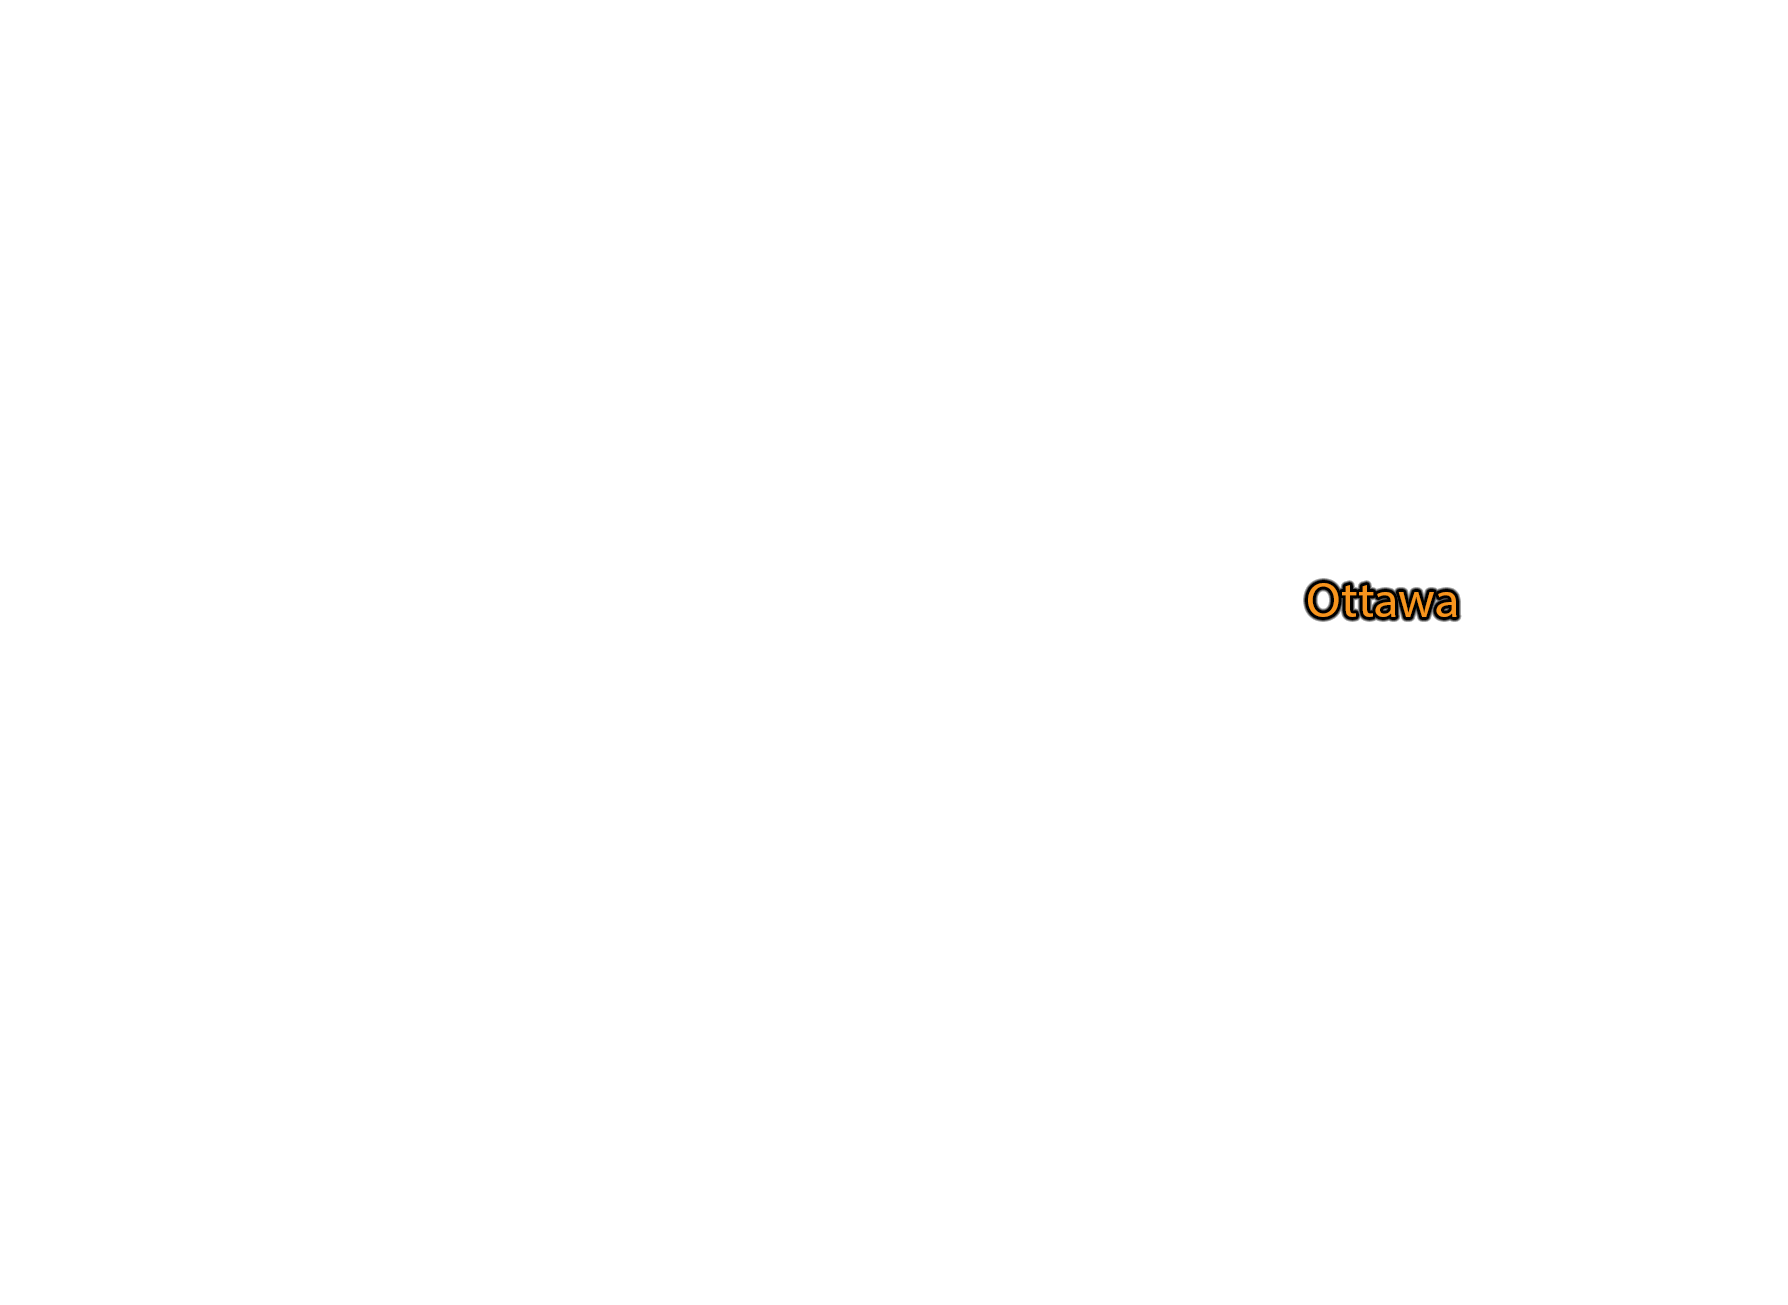 Ottawa label with glow